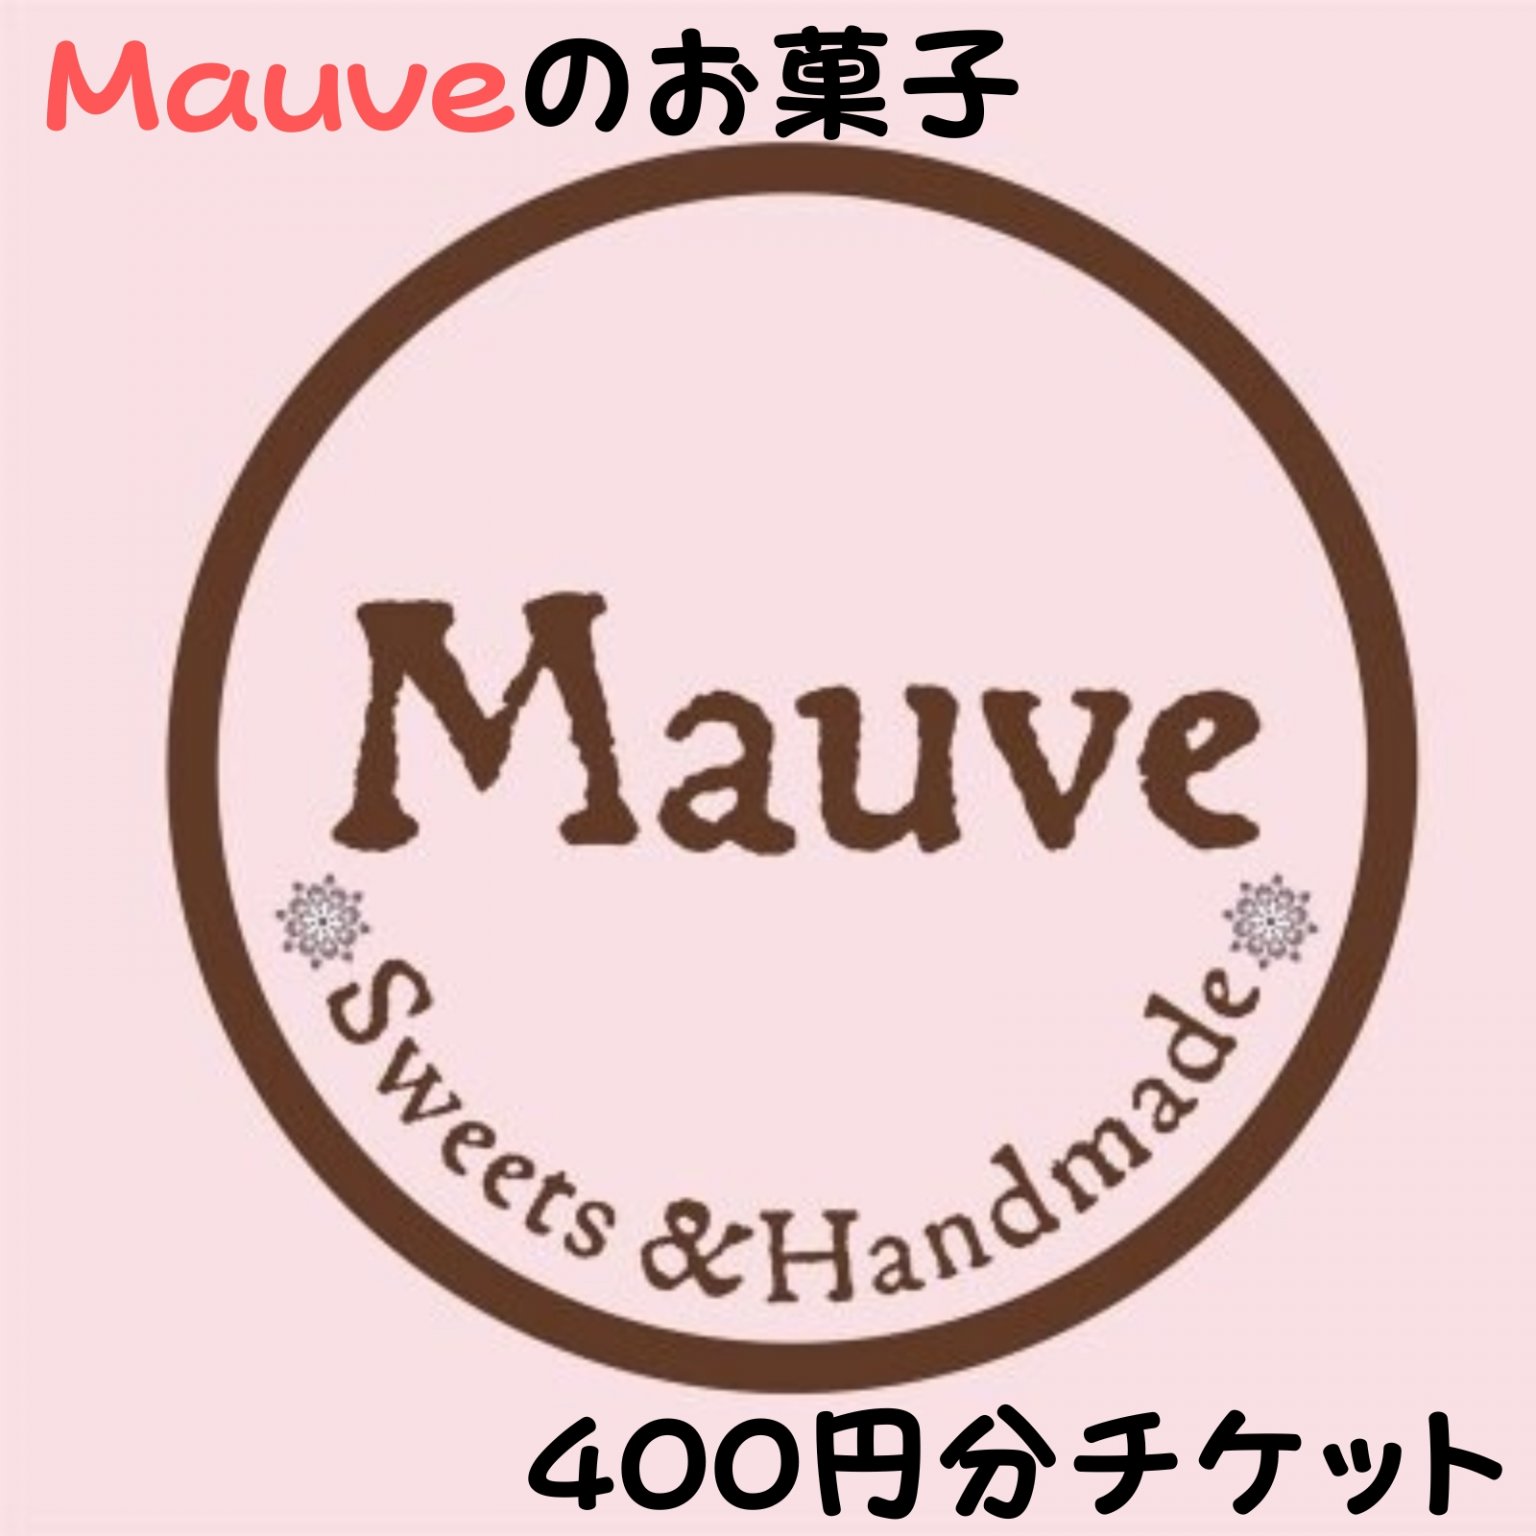 Mauveお菓子400円チケット